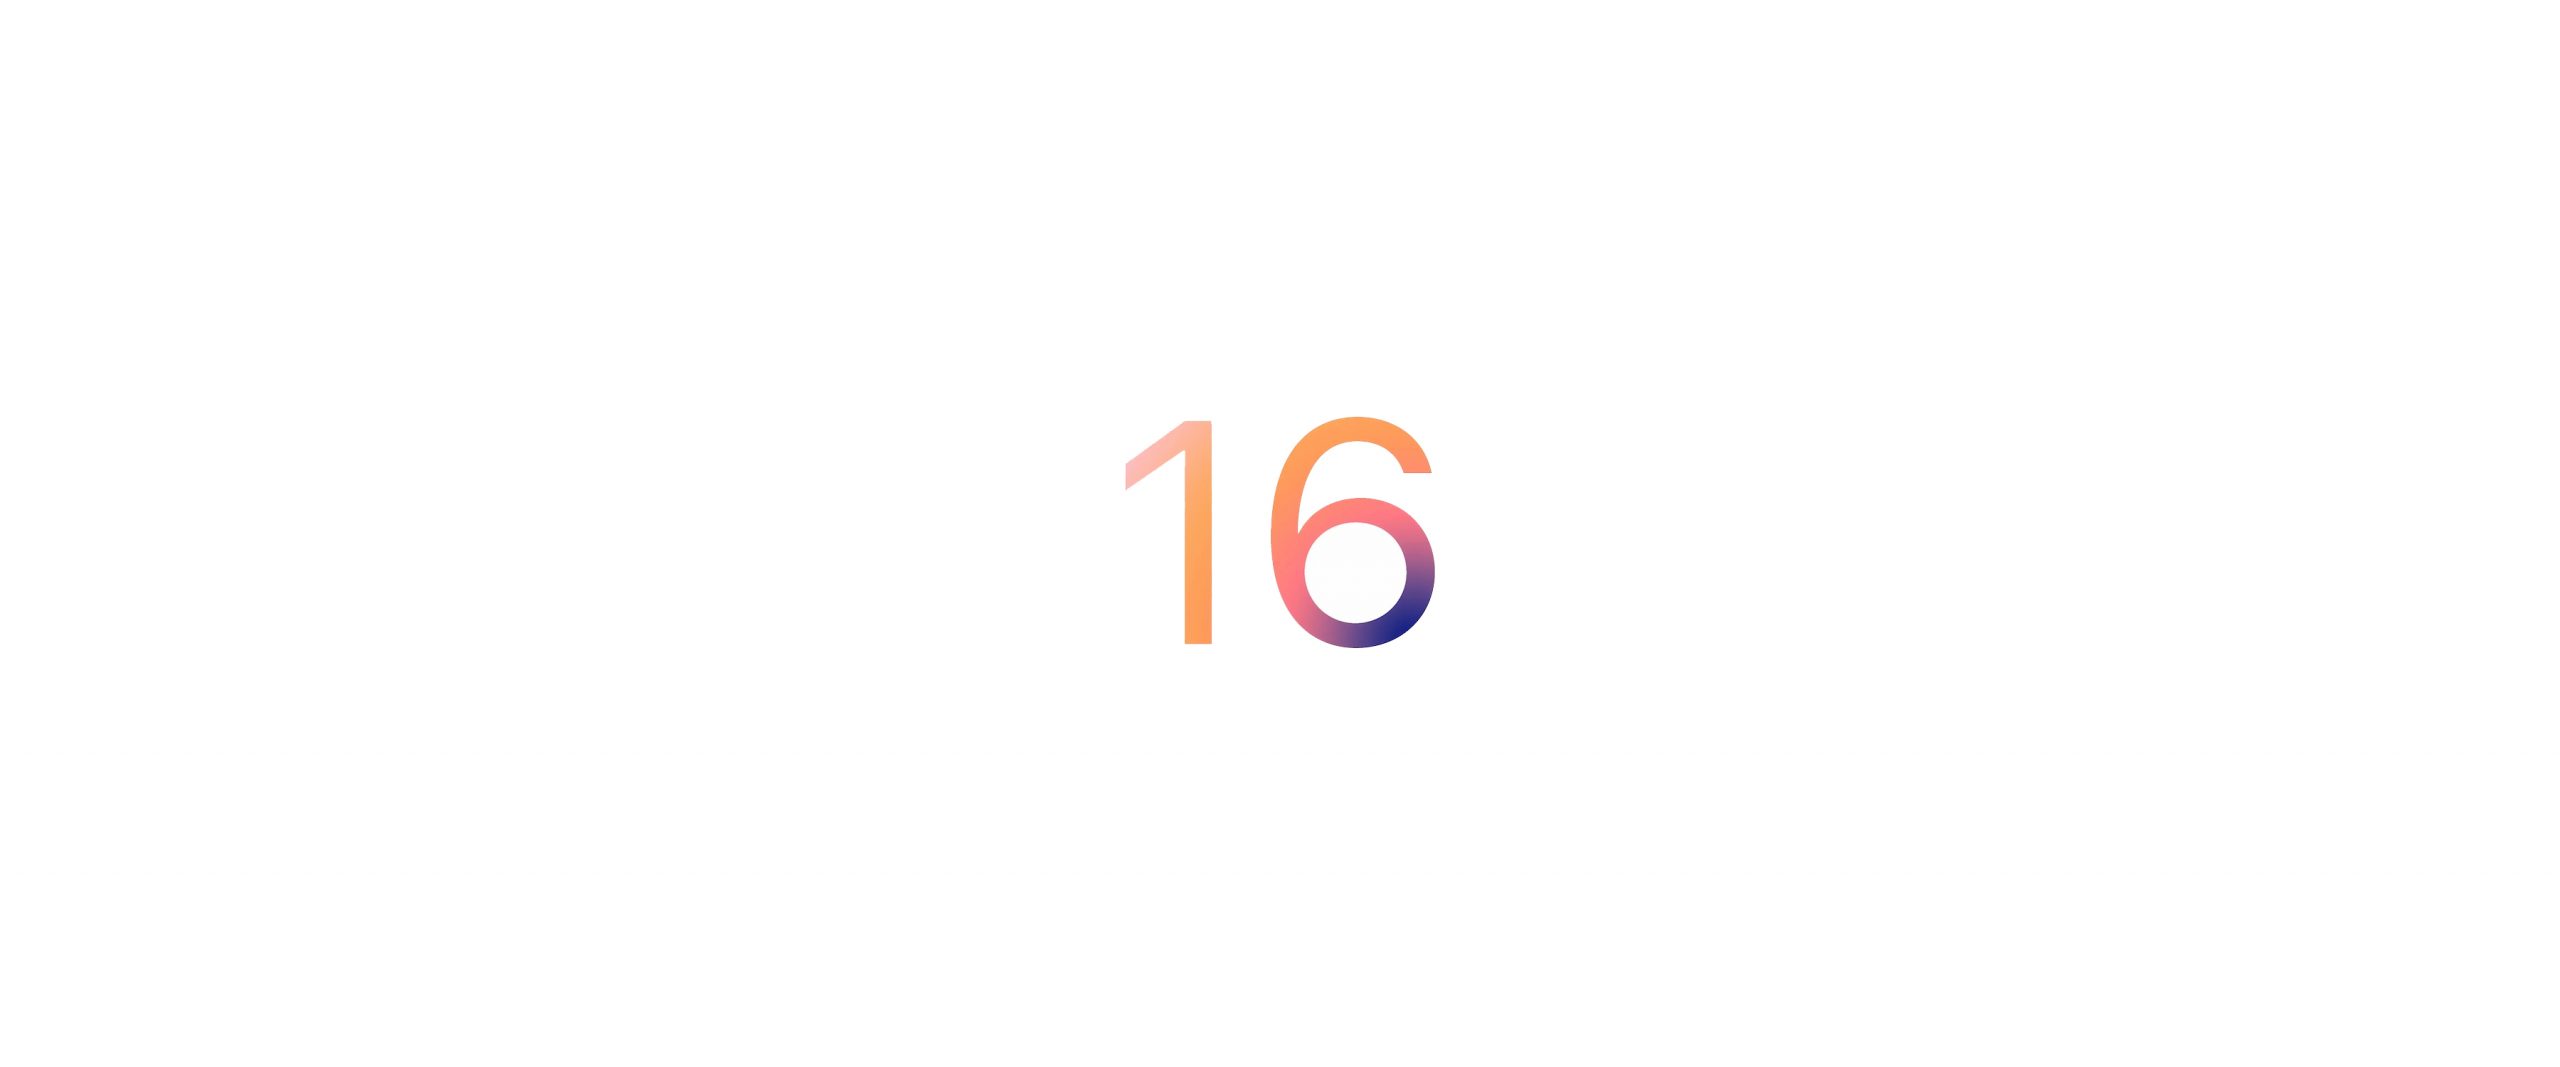 iOS 16 tanıtıldı